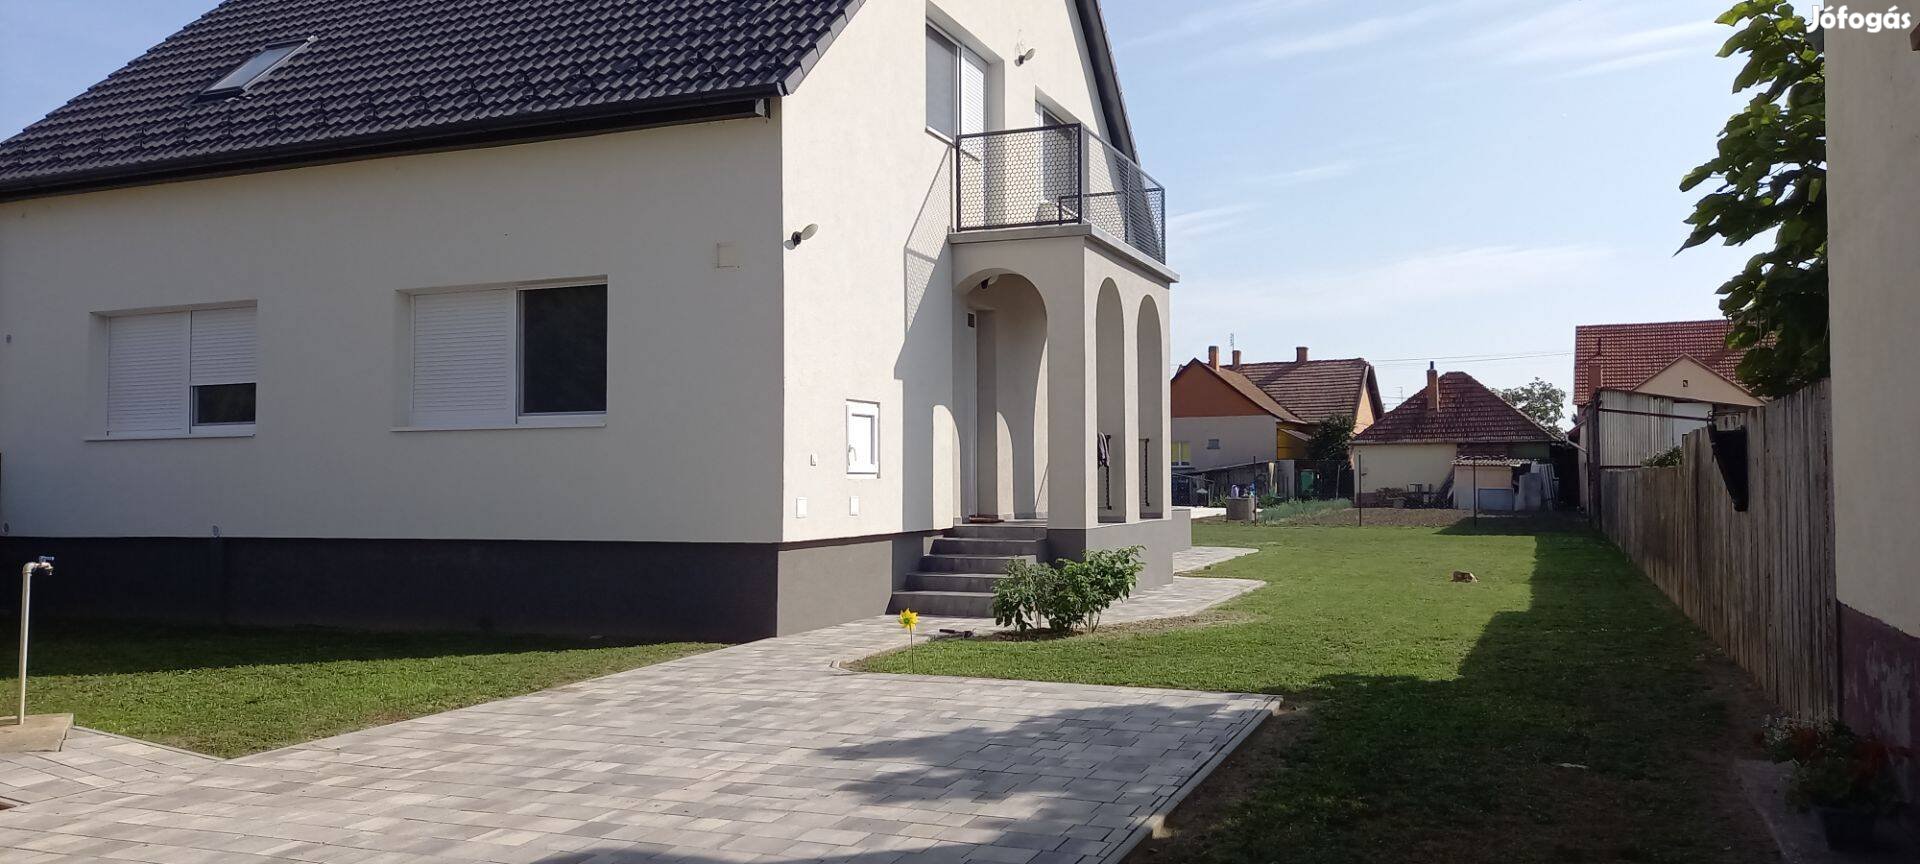 Szeged kertvárosi 5 szoba+nappali kulcsrakész ház tulajdonostól eladó